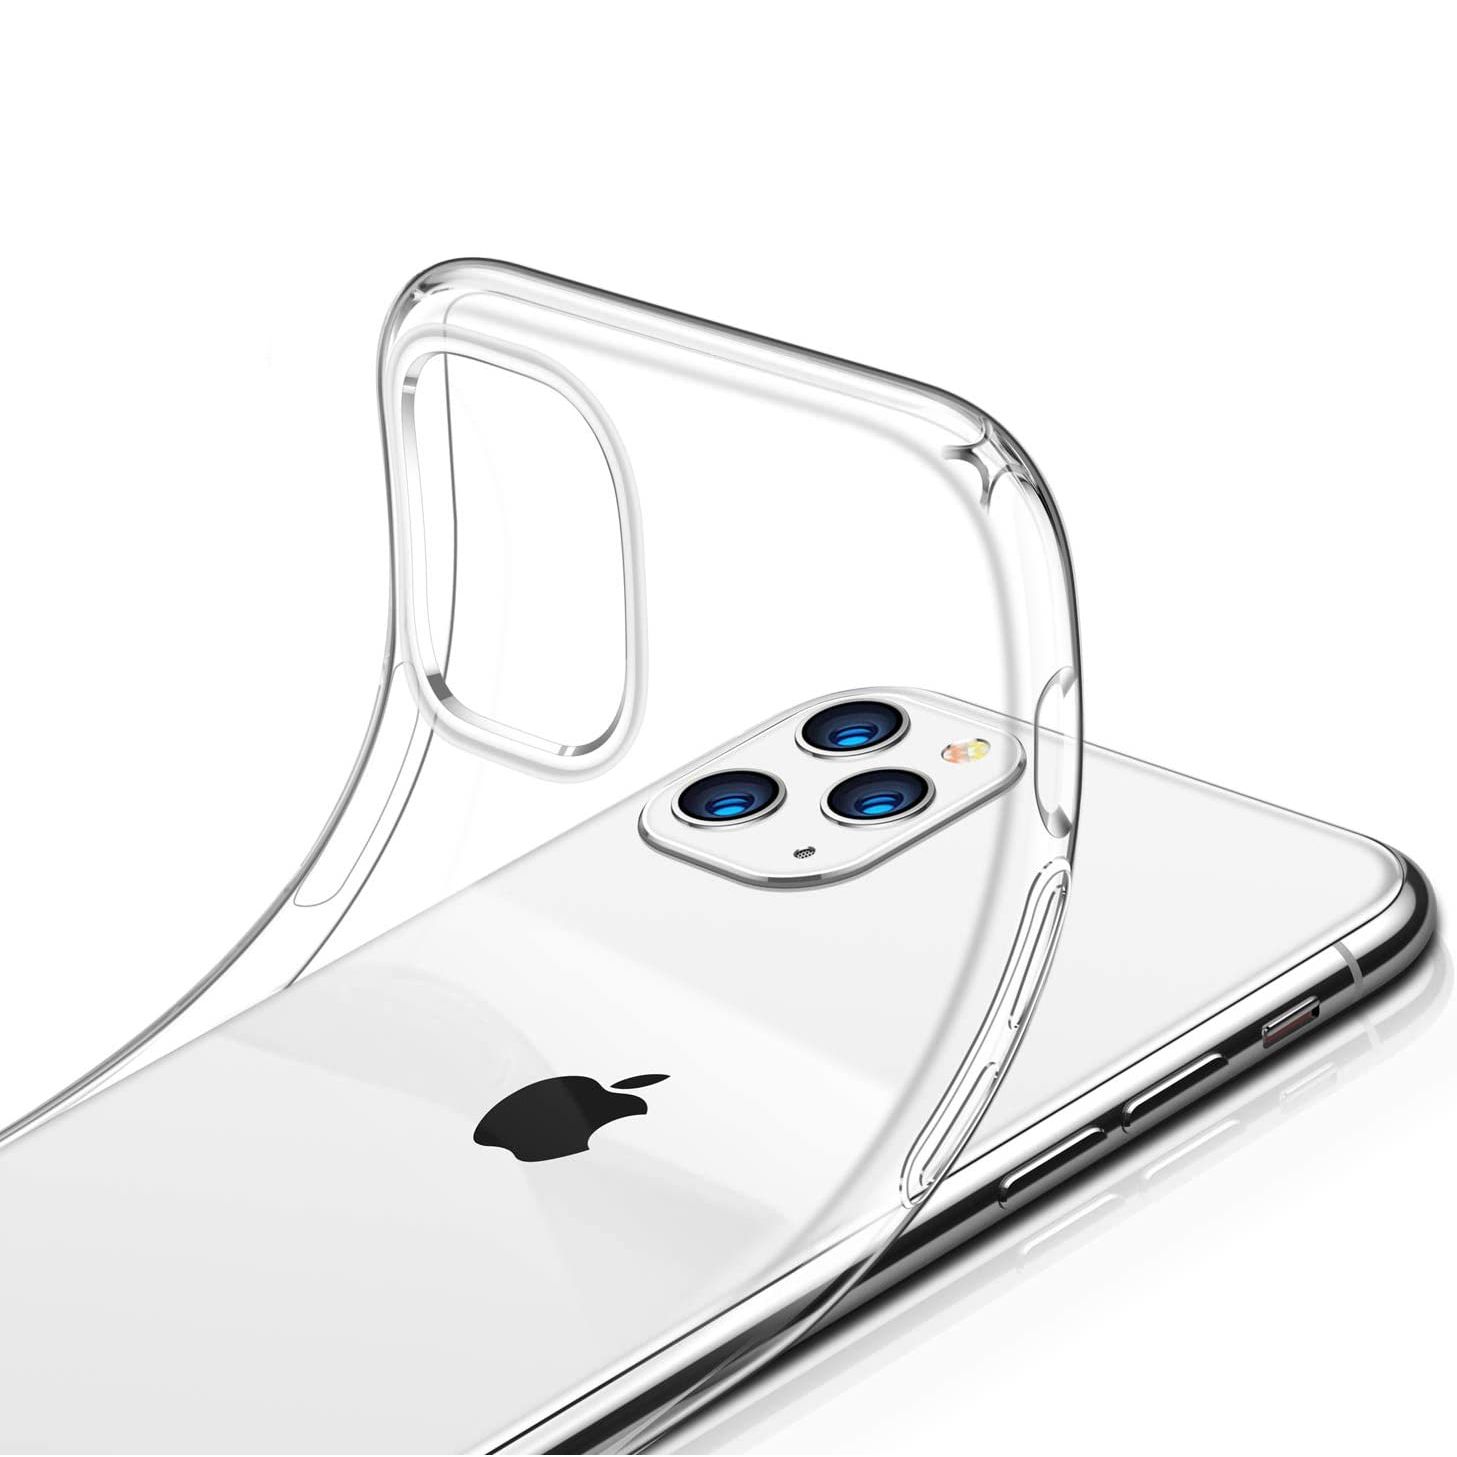 Выбери свой iPhone 11 pro max и получи отличный чехол в подарок!